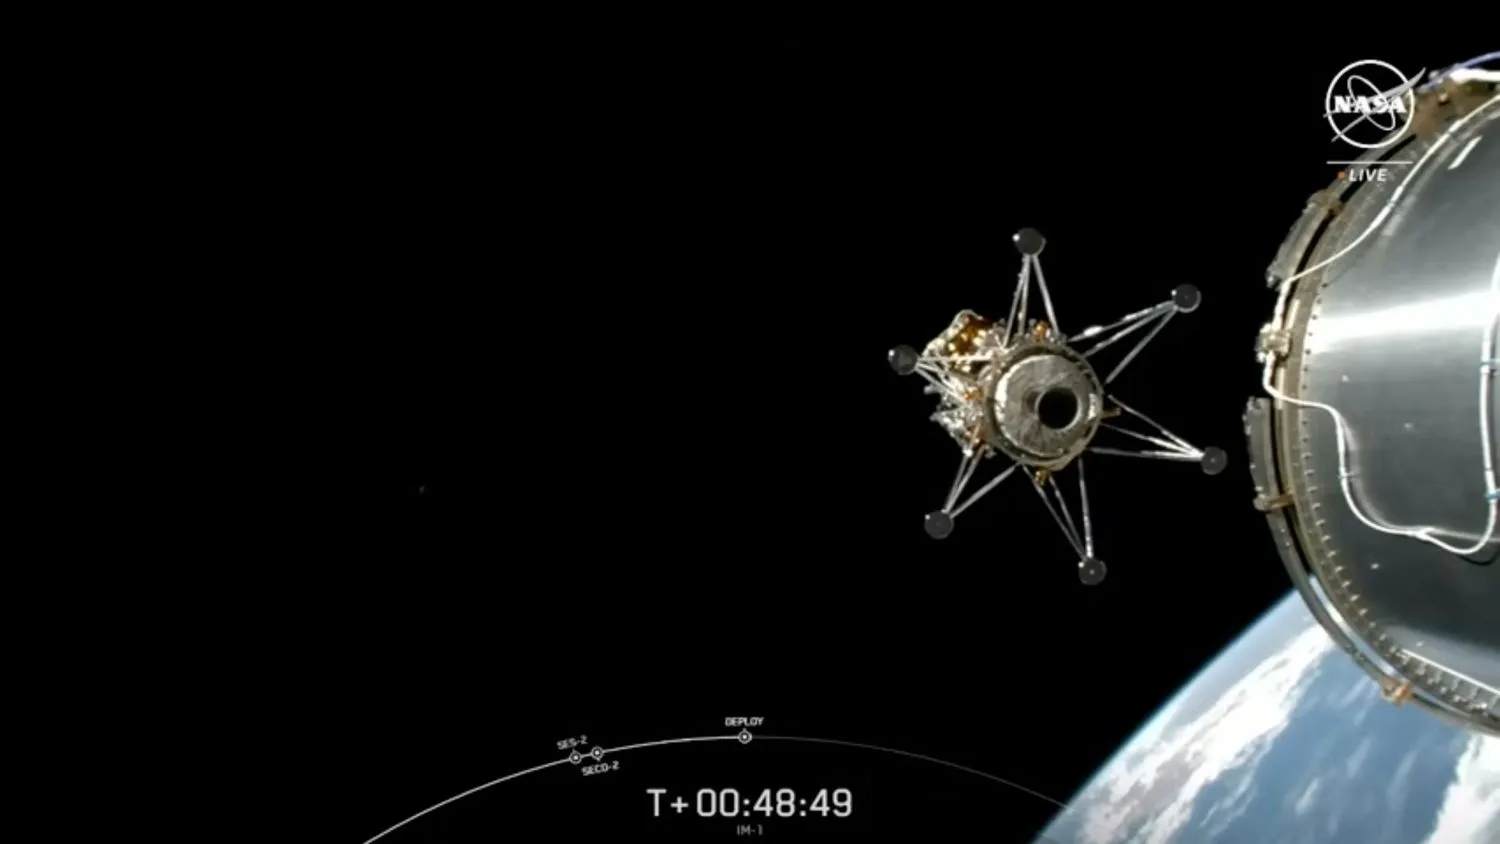 Mehr über den Artikel erfahren Private Odysseus-Mondlandefähre nimmt nach SpaceX-Start Kurs auf den Mond